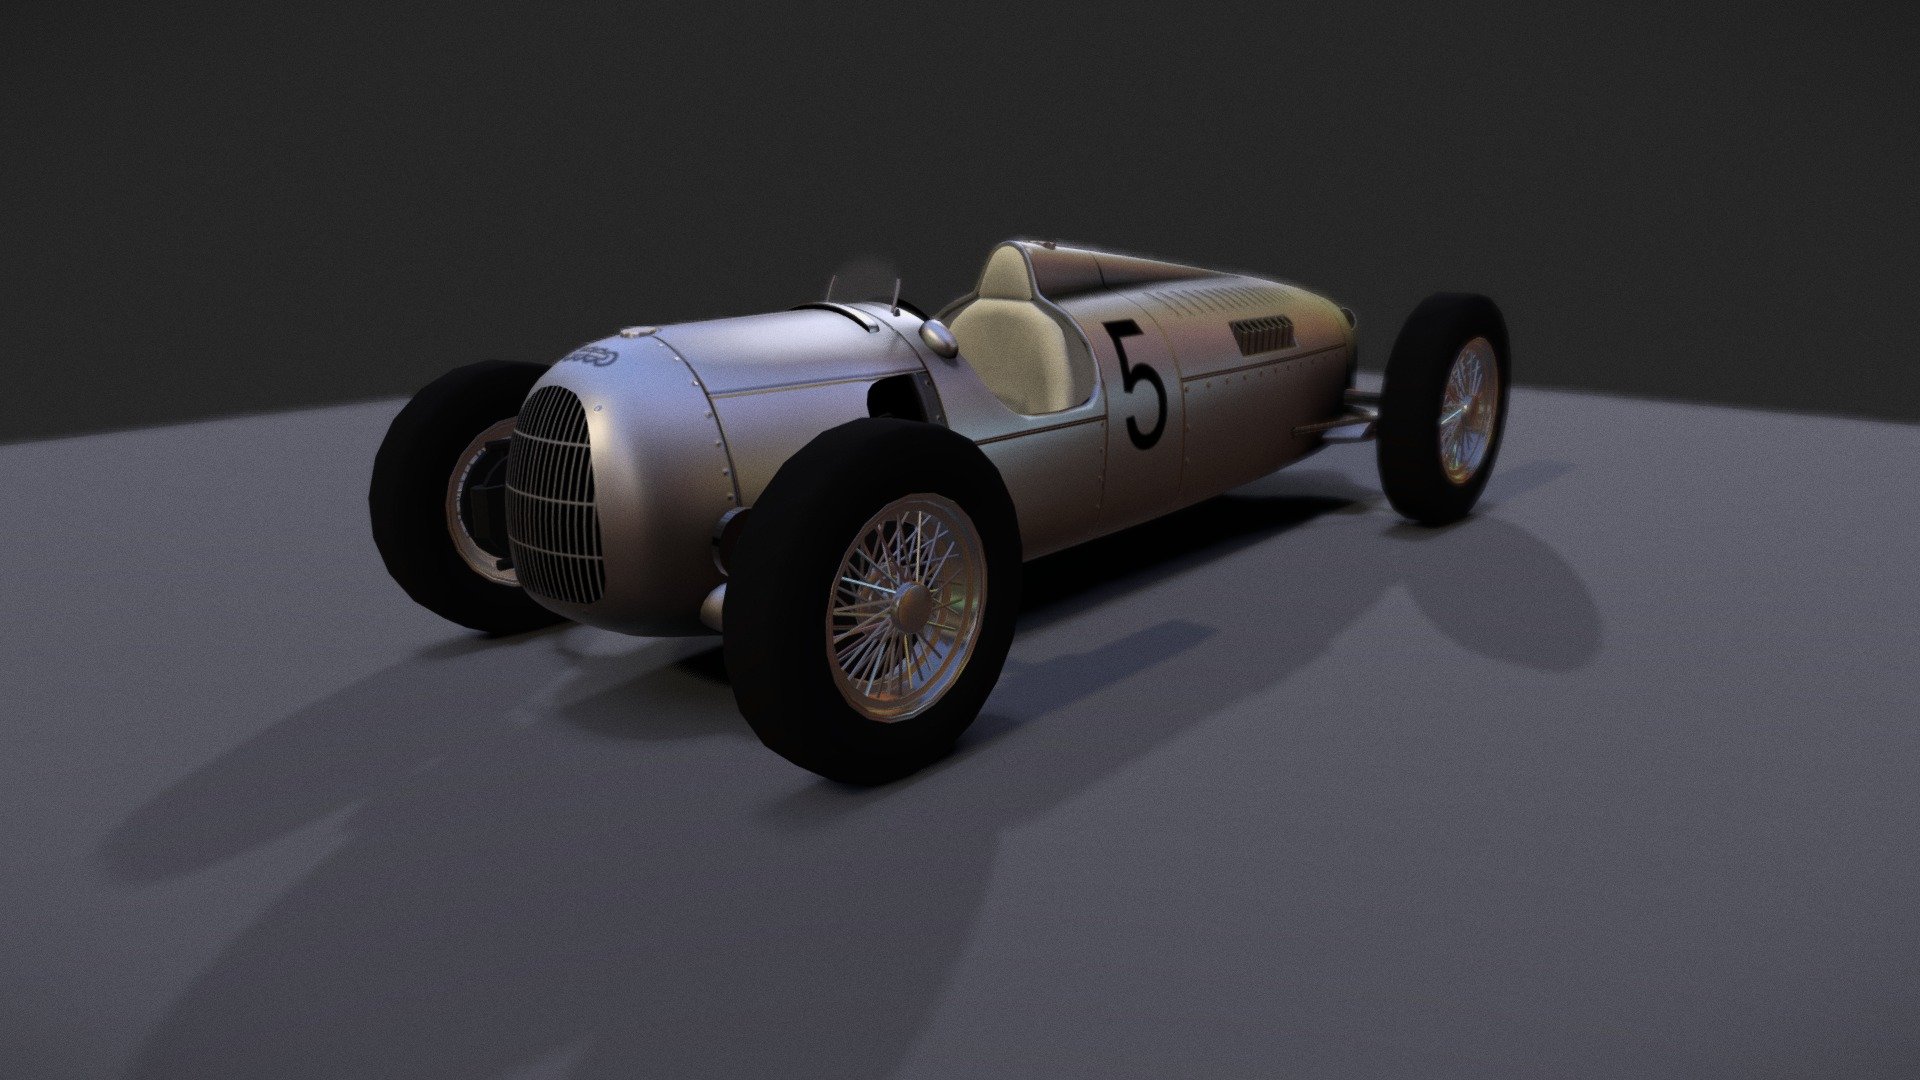 1936 AutoUnion Type-C - 3D model by Shaun Collins (@sc3) 3d model